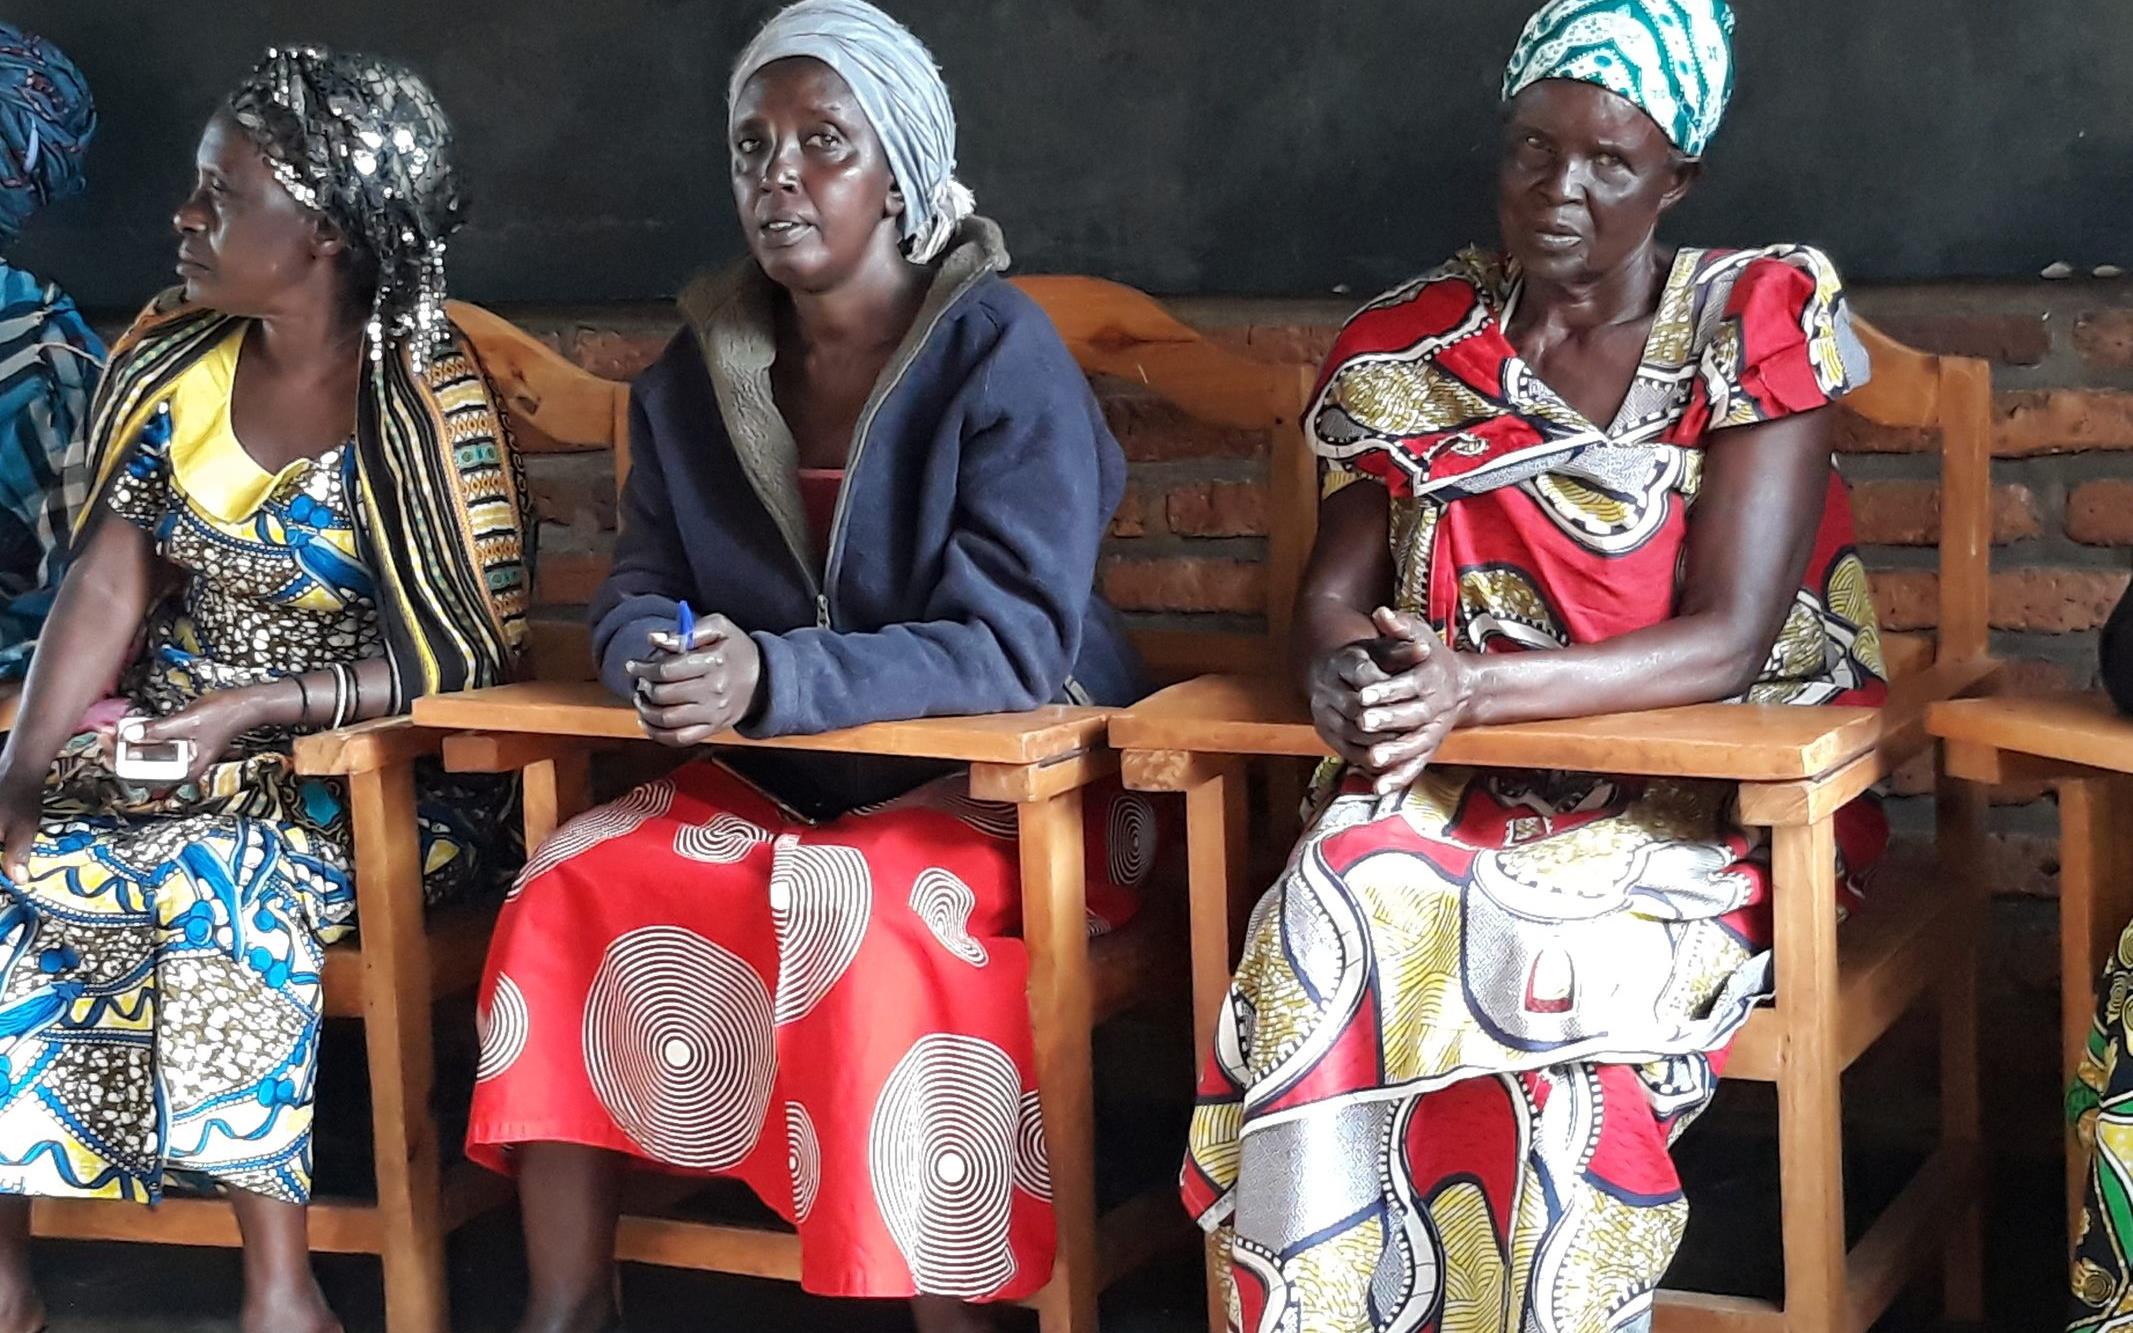 Reportage Ruanda: Aus Feinden wurden Freunde; Foto: Frauen des SHG Duterimbere, sitzend (Quelle: Felix Kaloki / Kindernothilfe)